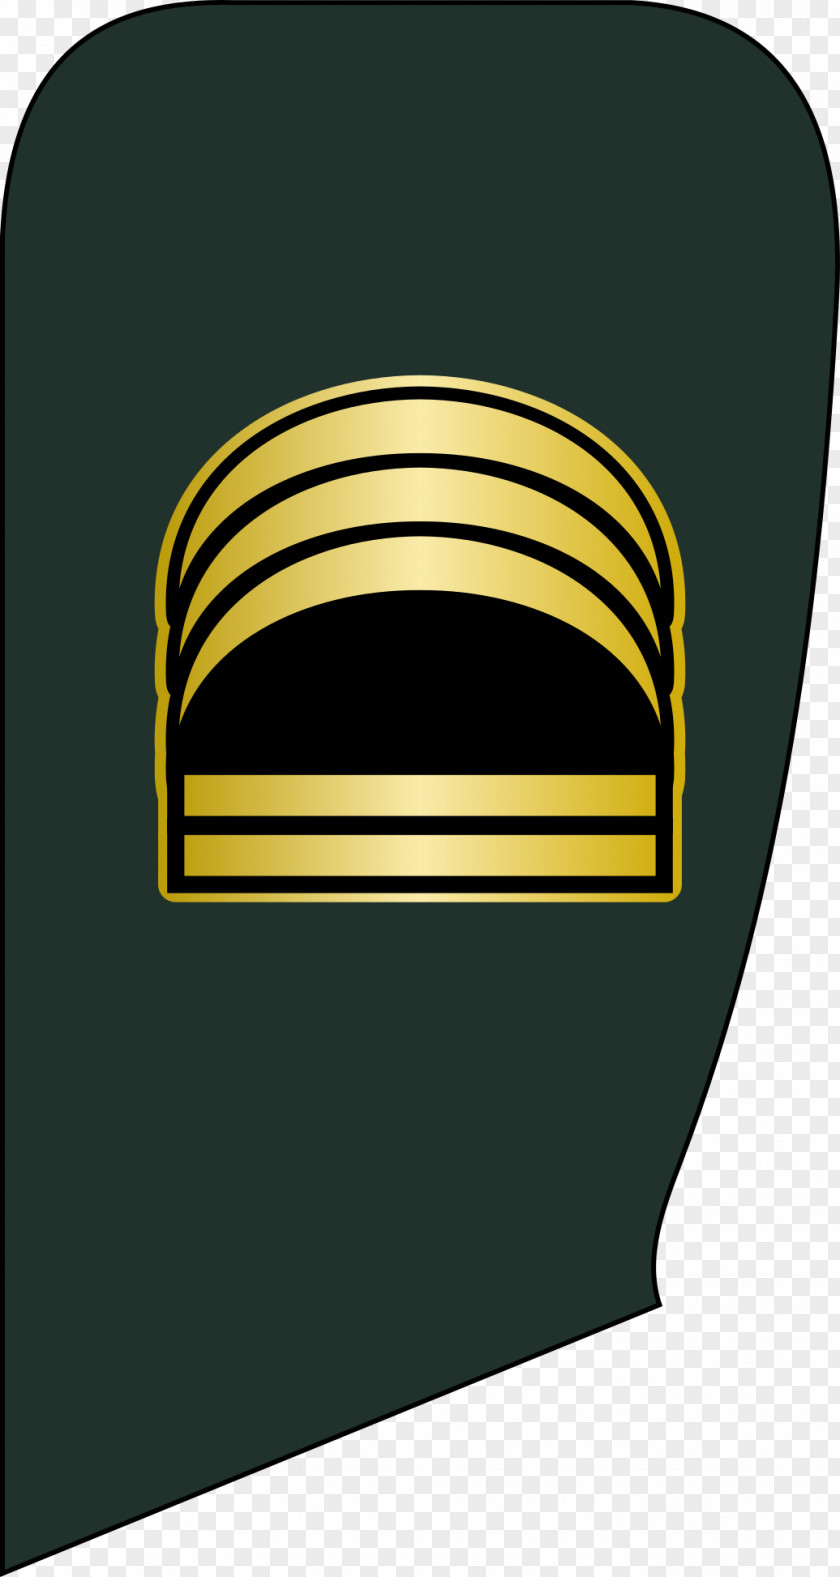 Soldier Lieutenant Colonel Major Sergeant PNG